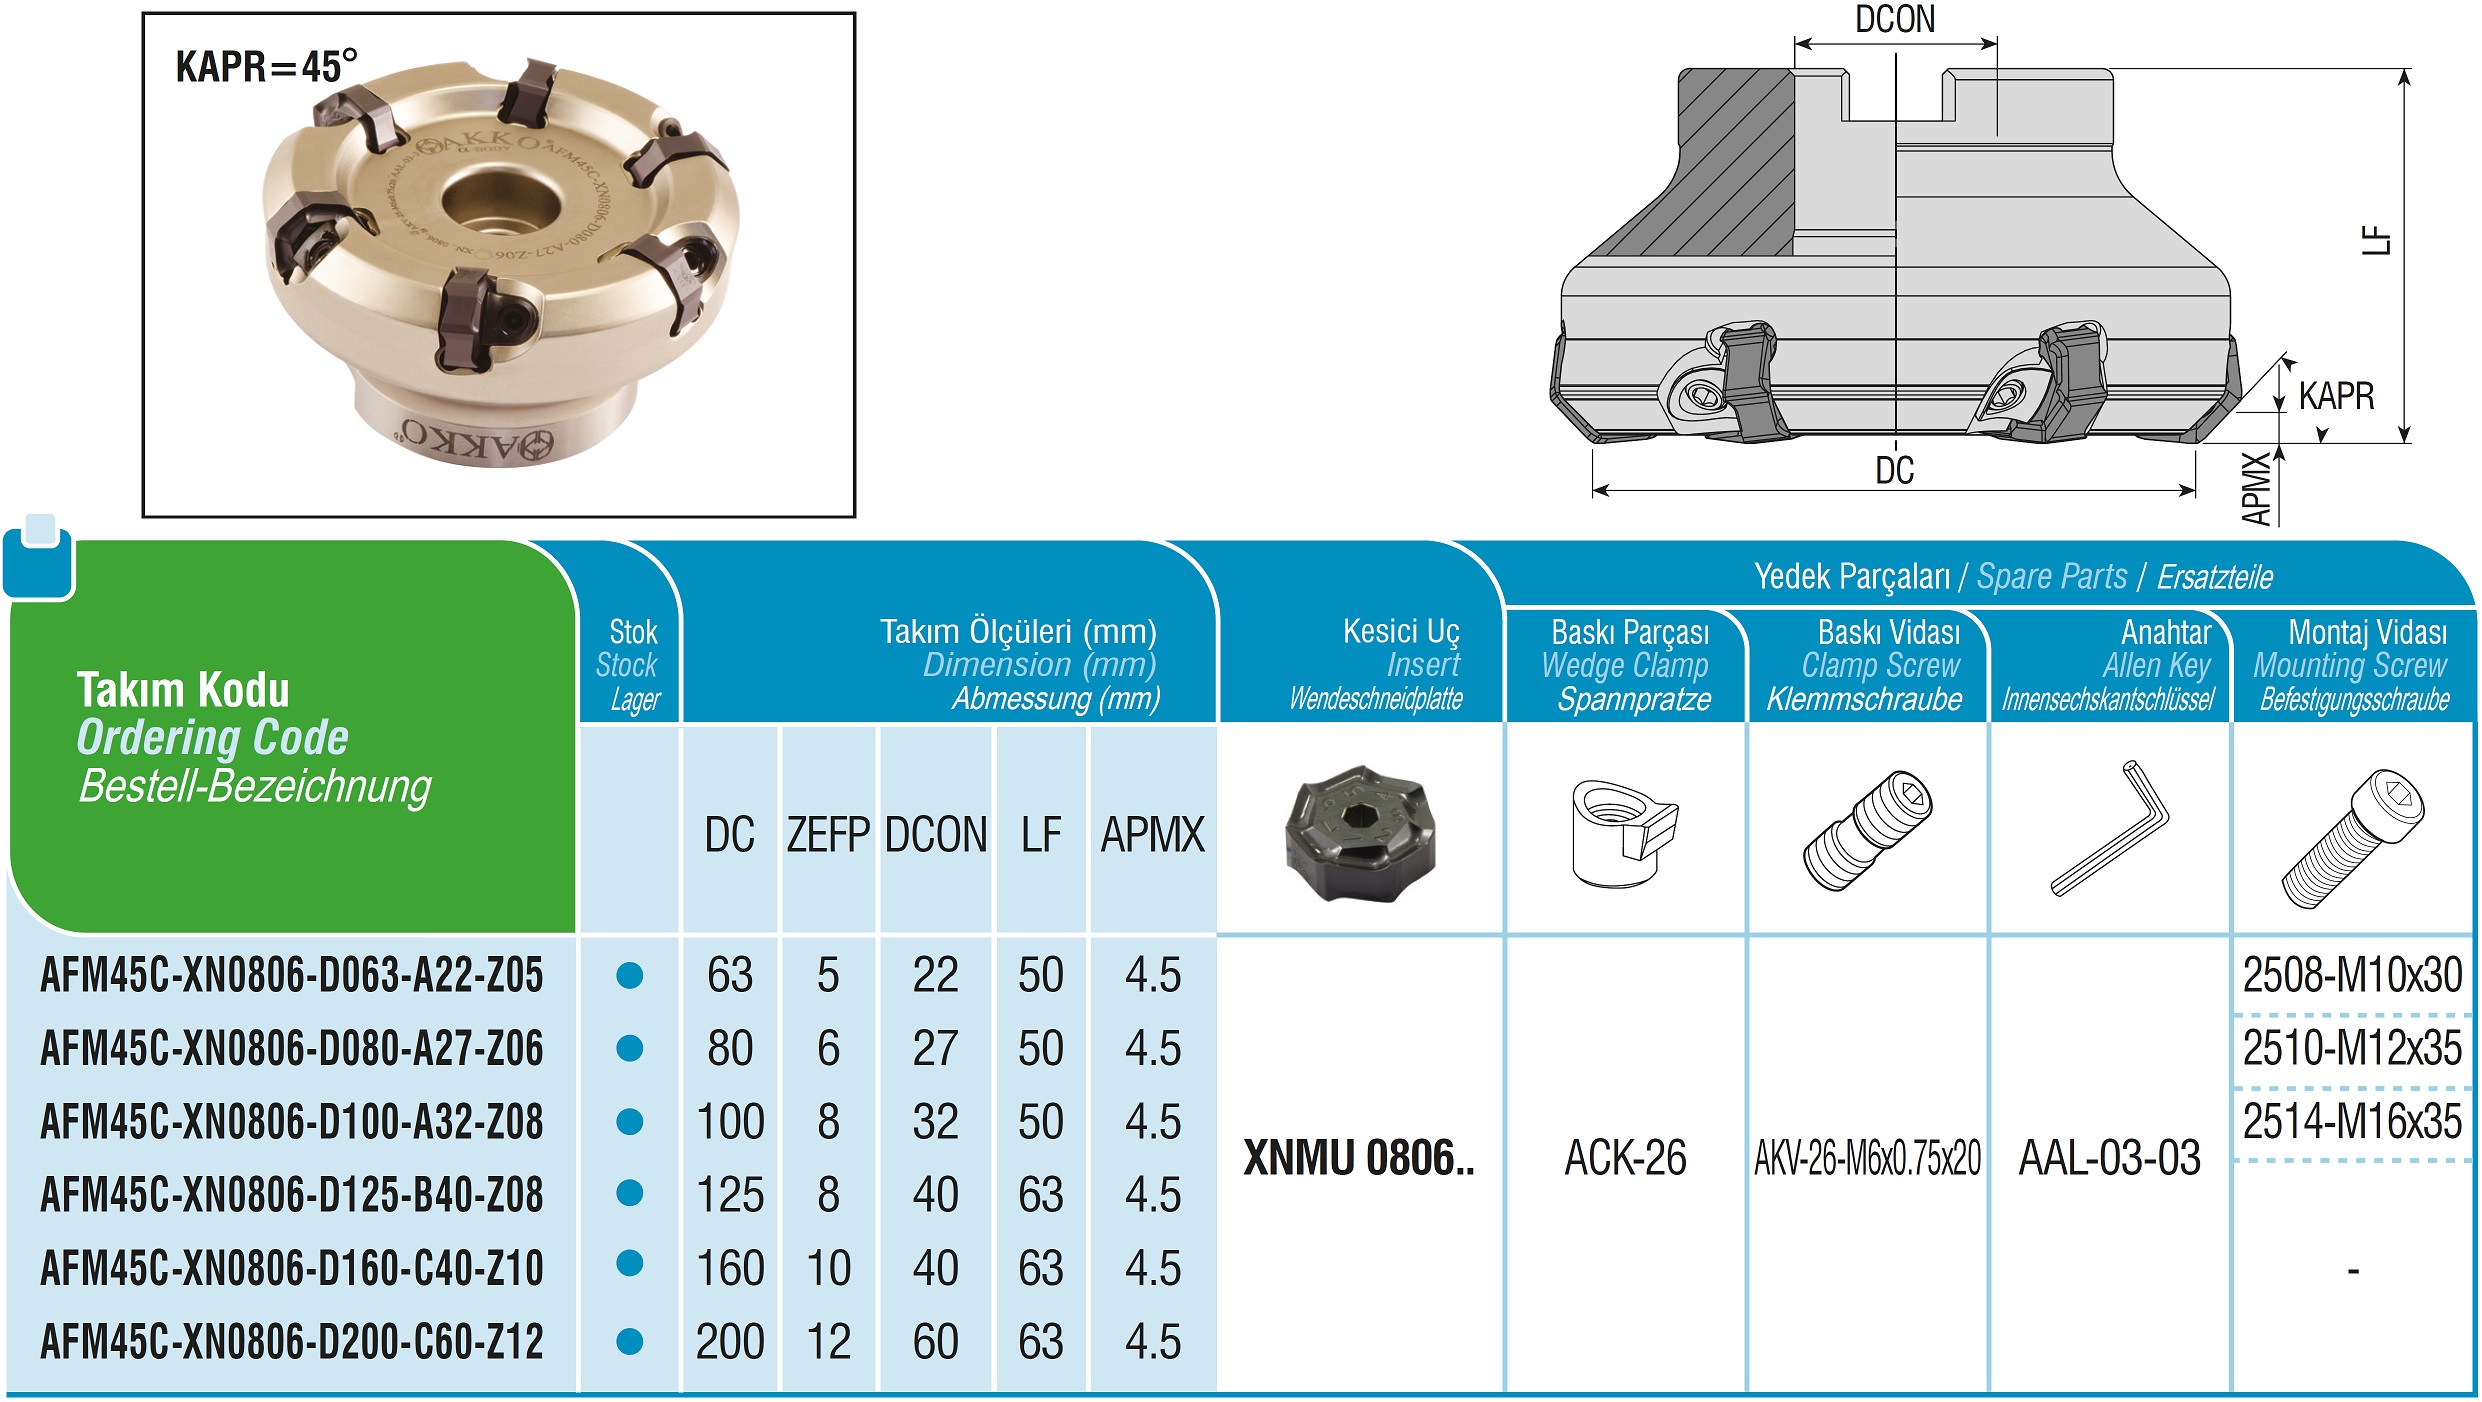 AKKO-Planmesserkopf ø 200 mm, 45° Anstellwinkel, kompatibel mit Dijet XNMU 0806.. Schaft-Ausführung ø 60 mm (Typ C), ohne Innenkühlung, Z=12